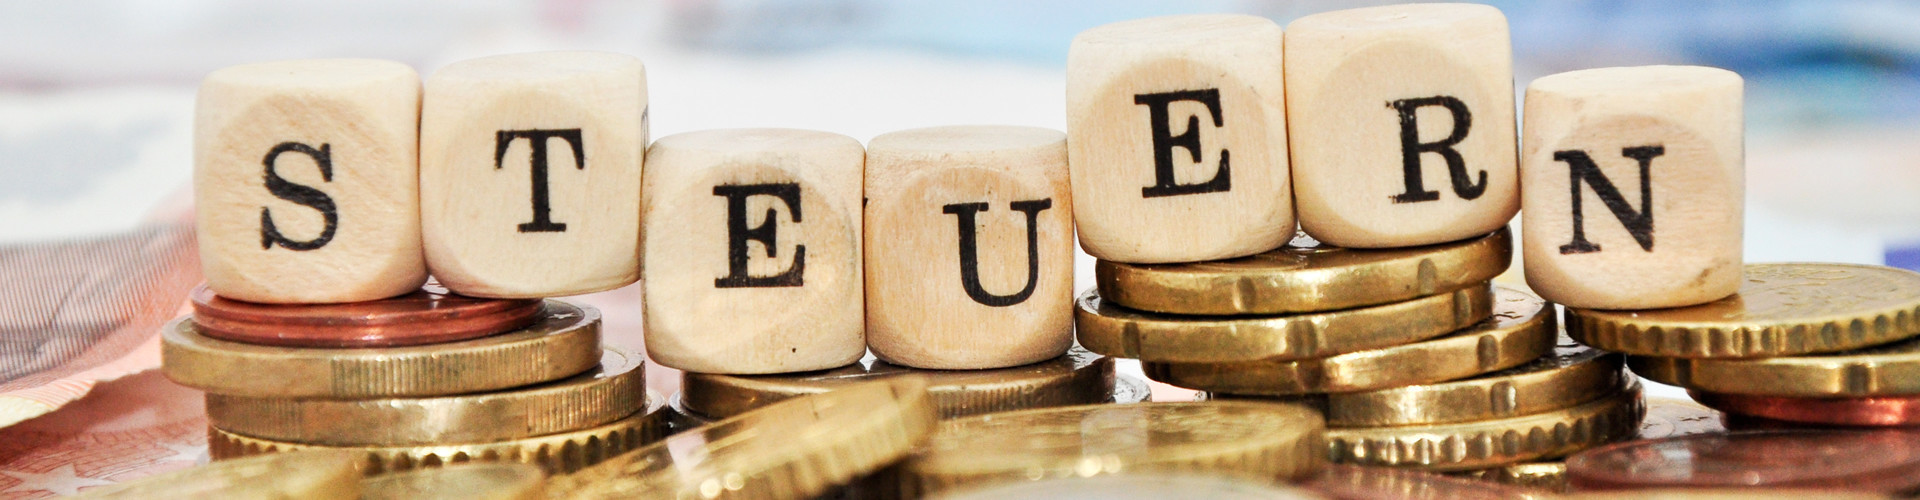 Buchstabenwürfel, welche auf einem Stapel Euro-Münzen liegen, bilden das Wort "Steuern" © Marco2811, stock.adobe.com